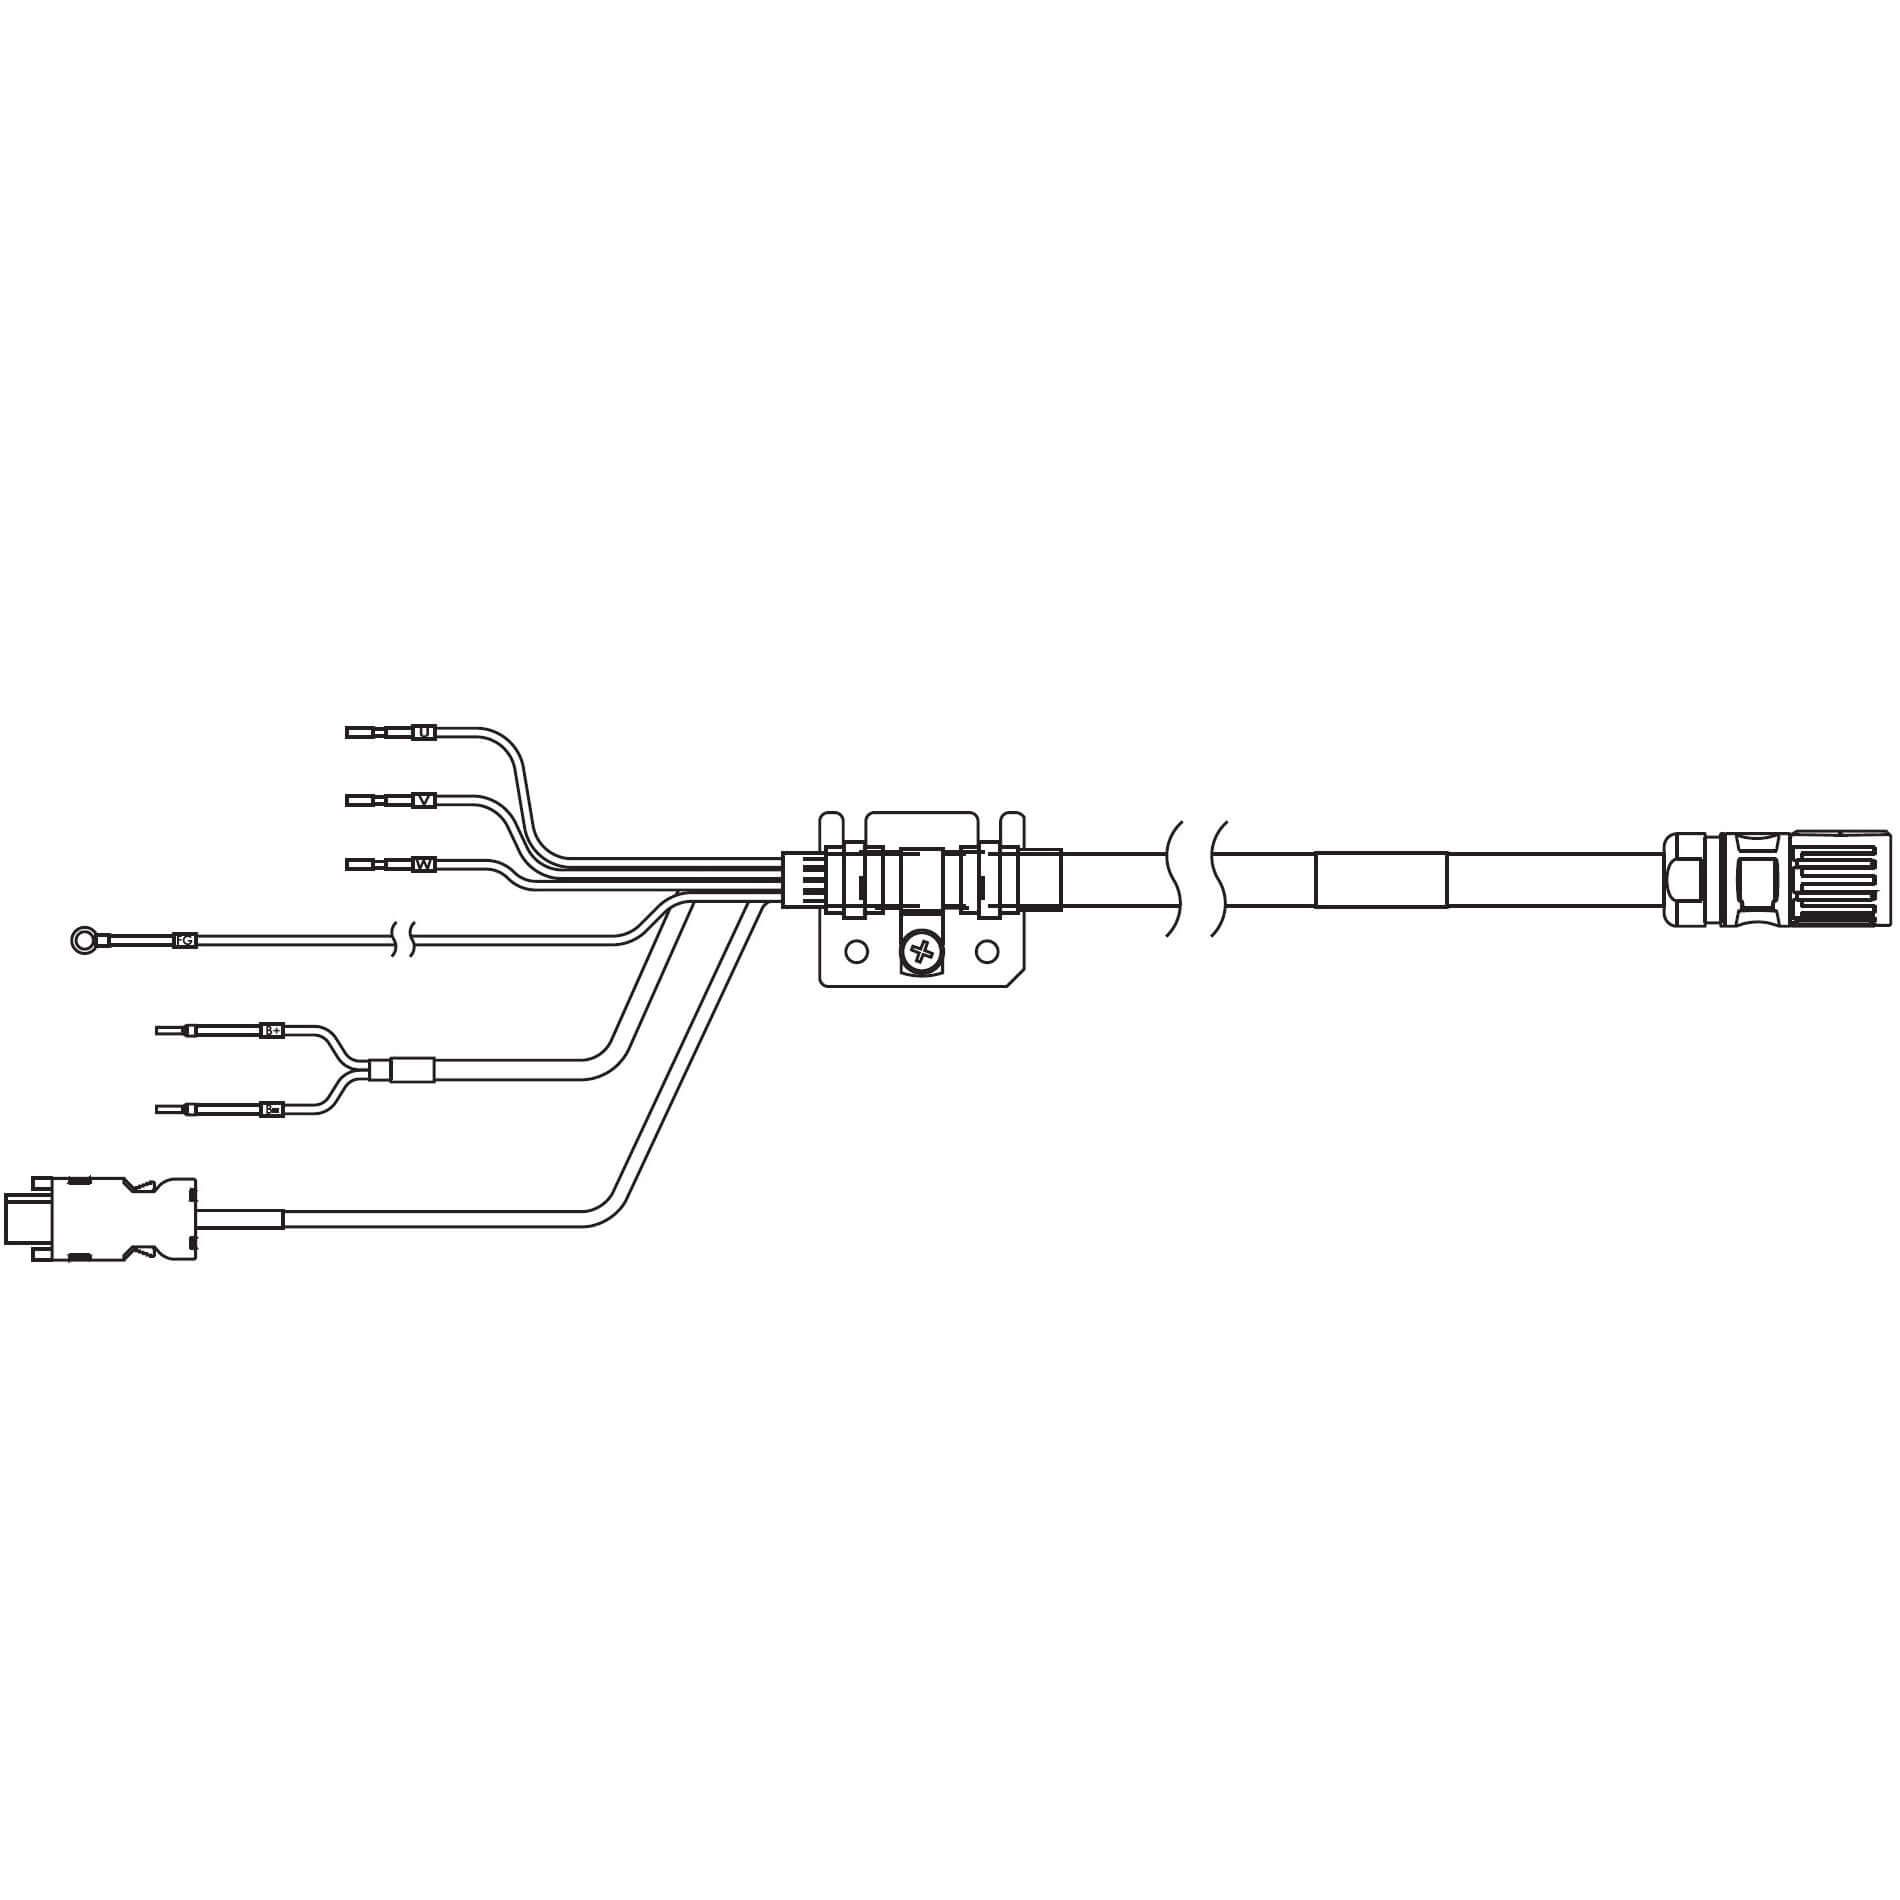 1S-Servomotor mit Safe Motion, Integrierte Kabel R88A-CX1A020SF